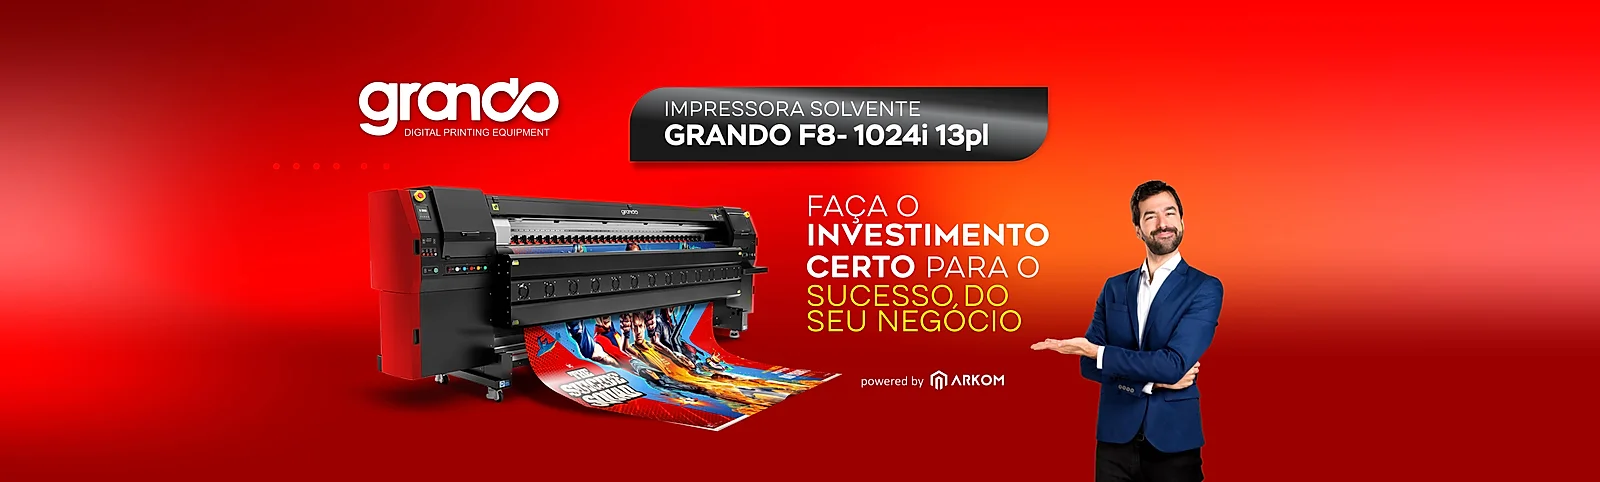 Impressora Solvente Grando F8-1024i 13pl